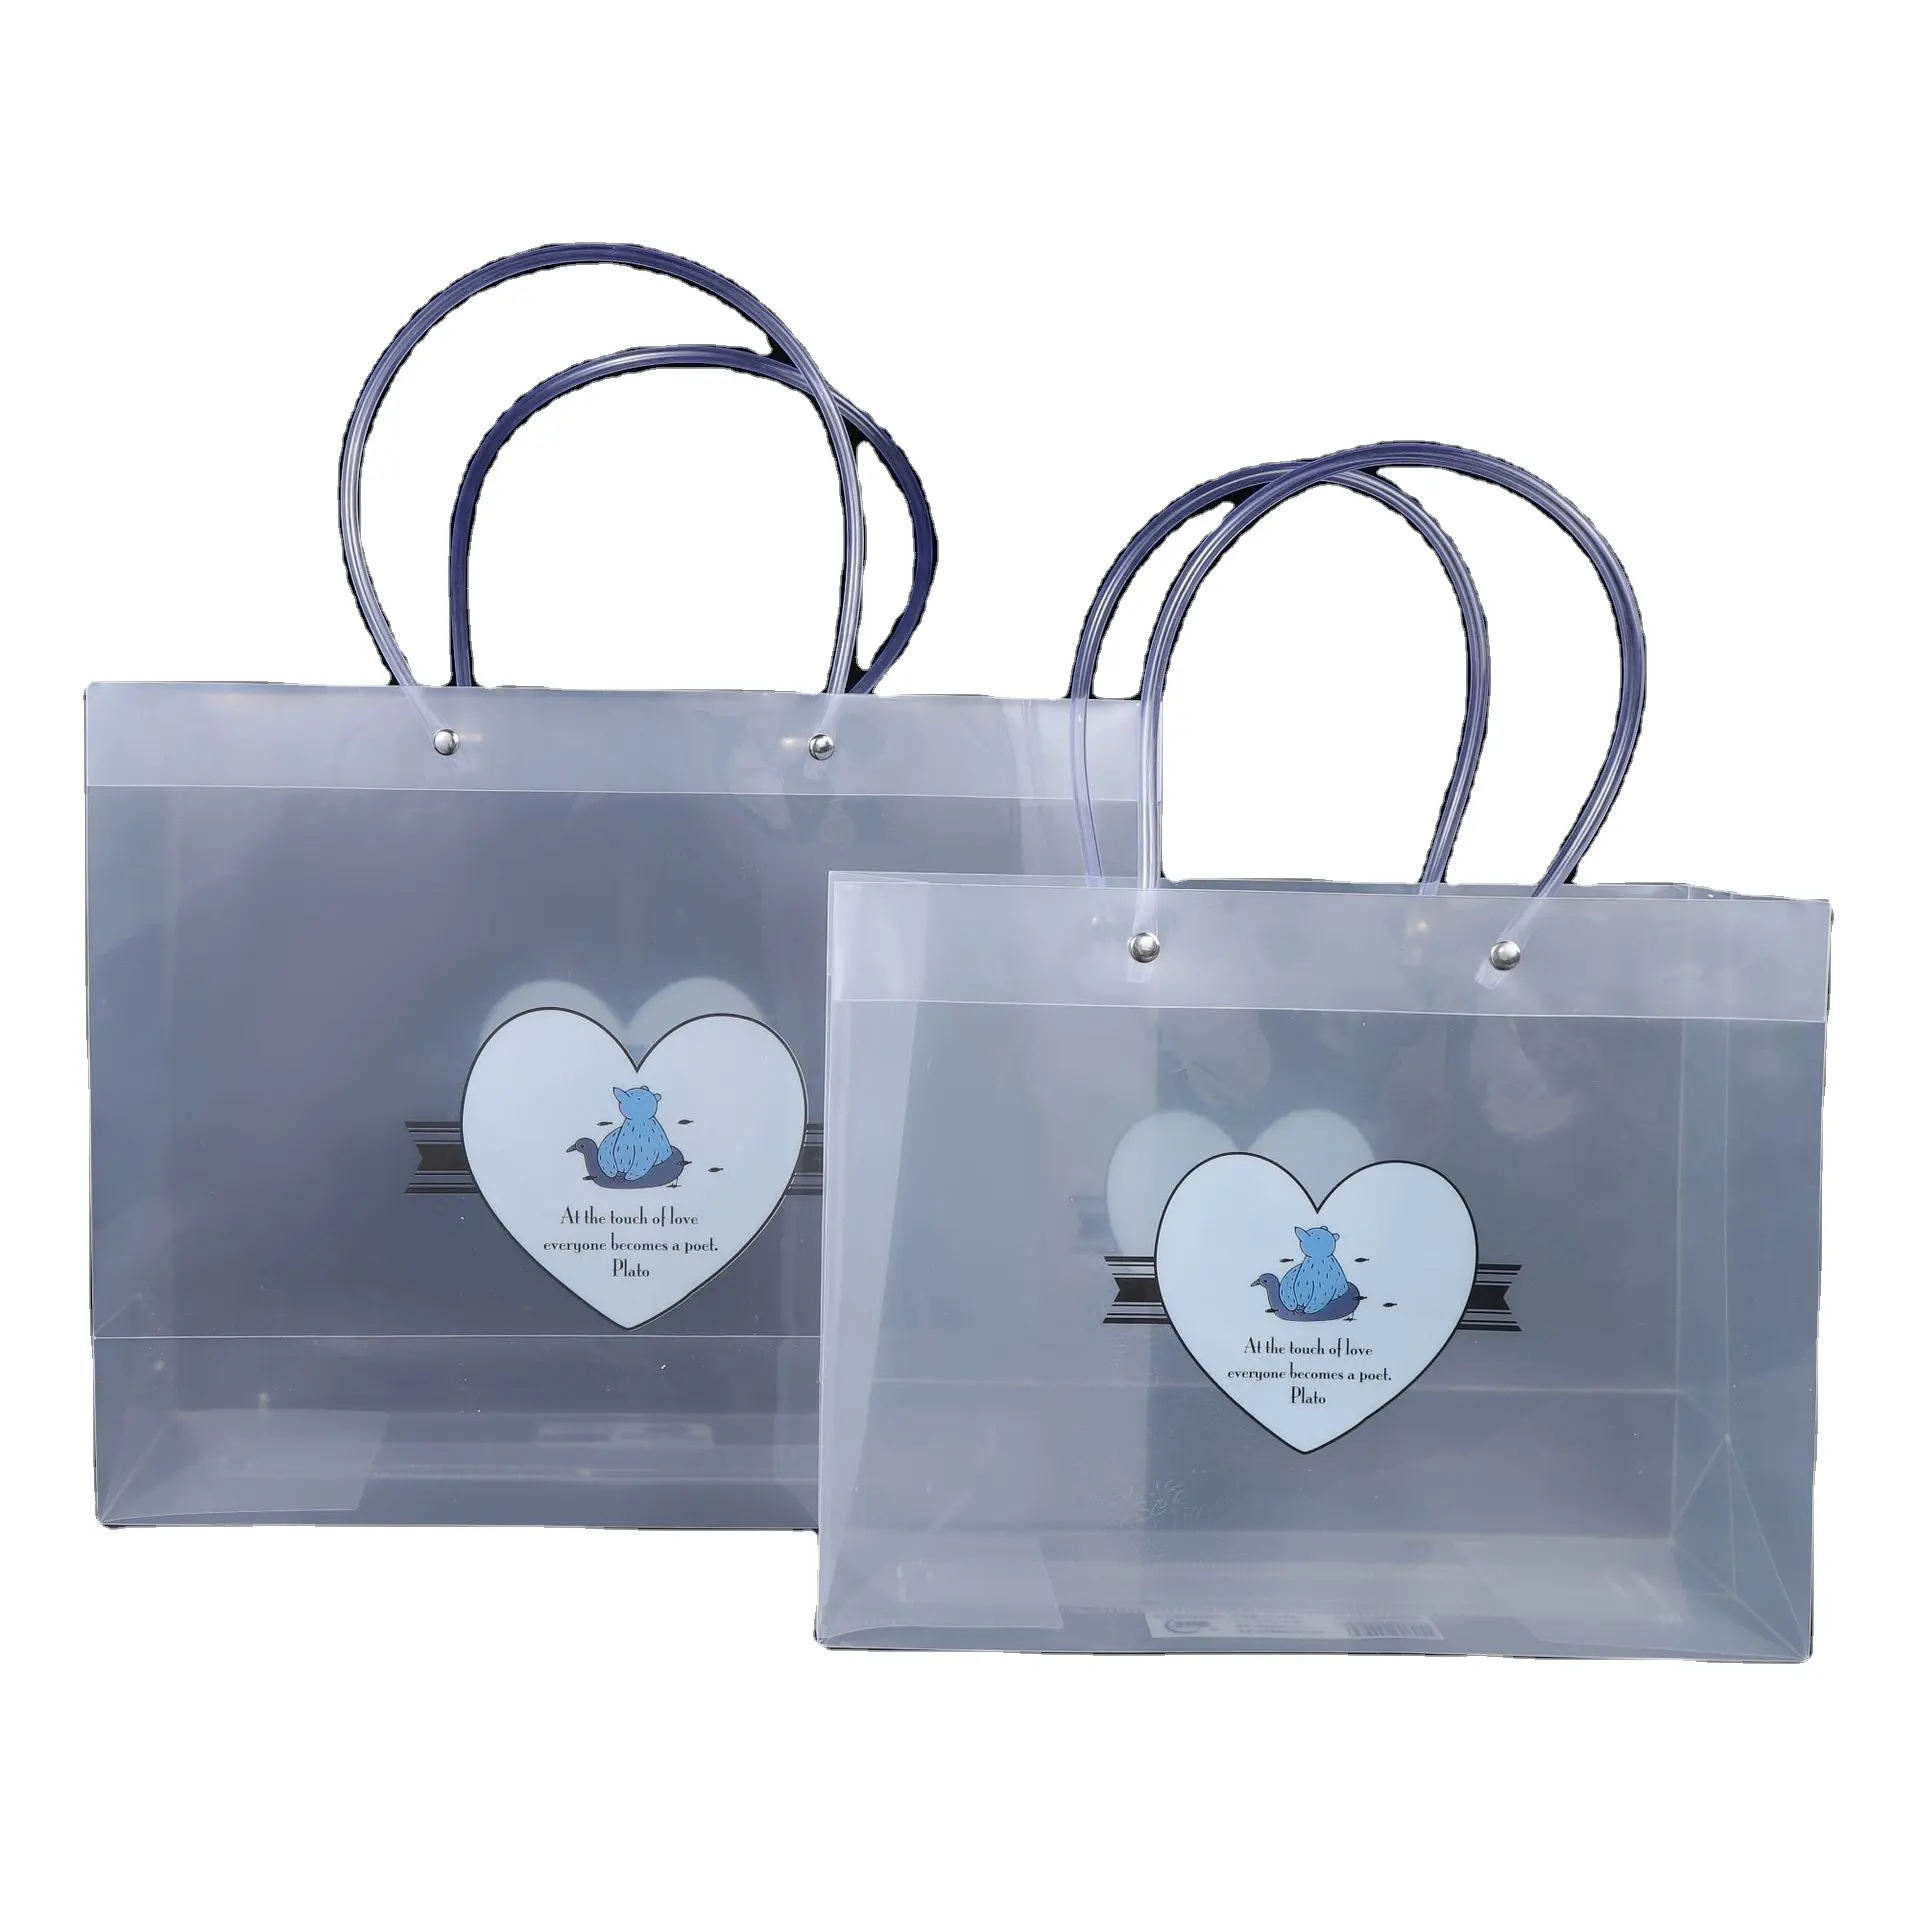 Vente en gros de sacs fourre-tout transparents en PVC avec logo imprimé personnalisé modèle compagnon d'emballage en plastique étanche modèle simple pour emballage de produit